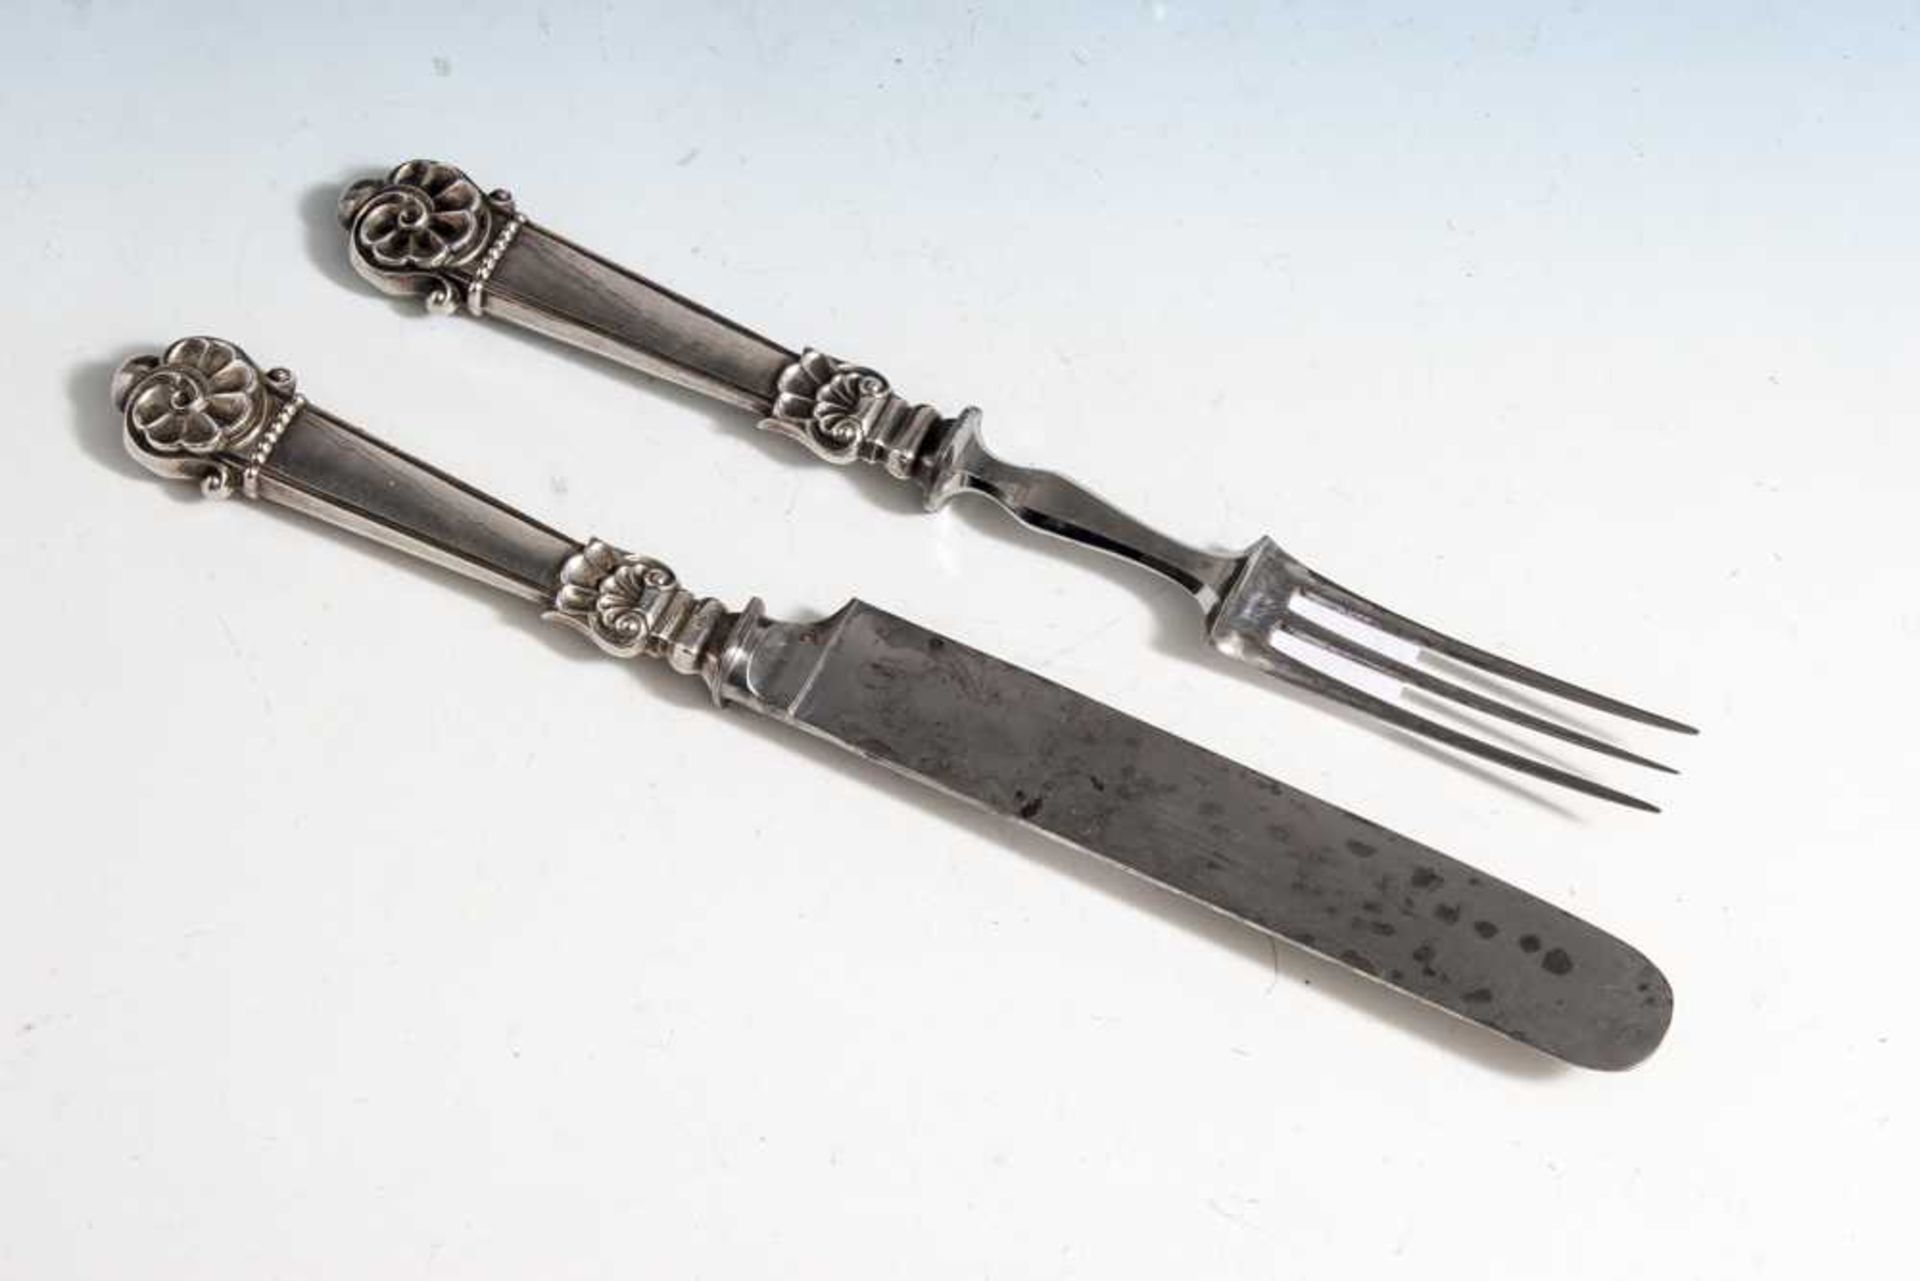 Vorlegebesteck, Silber 13-lötig, Messer und Gabel, die Schafte mit reliefiertemMuschelwerk.